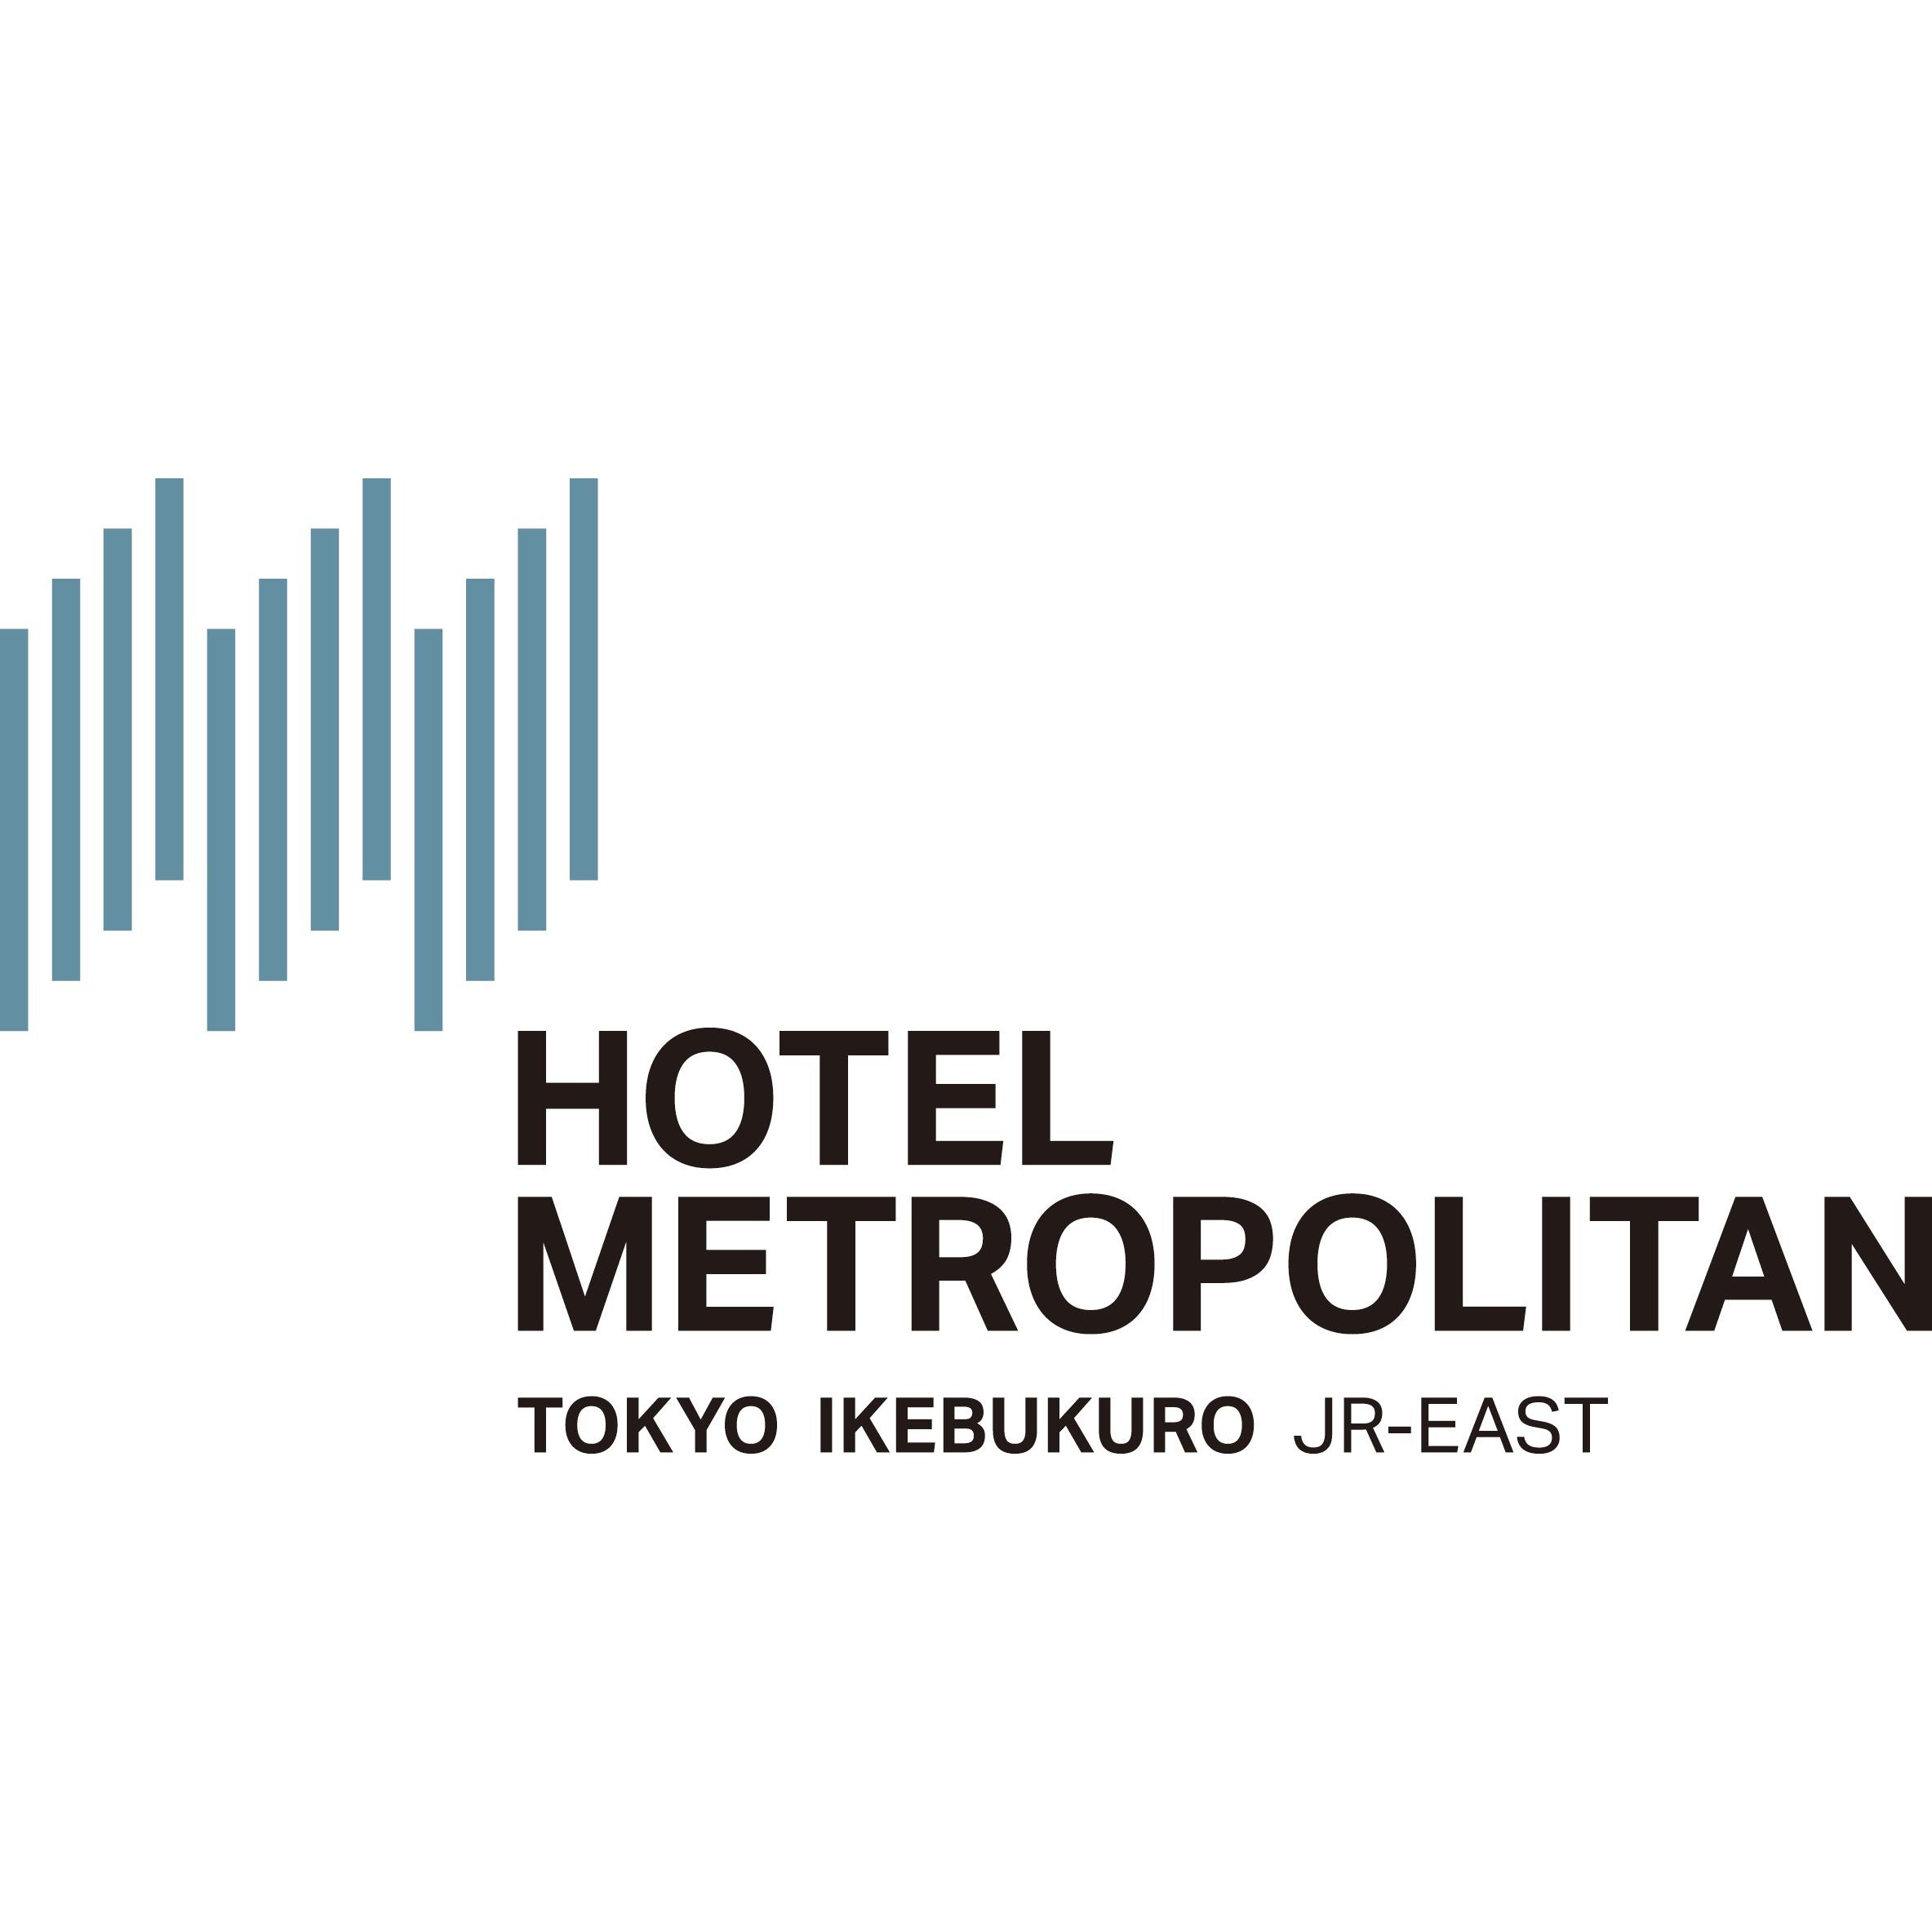 ホテルメトロポリタン Logo